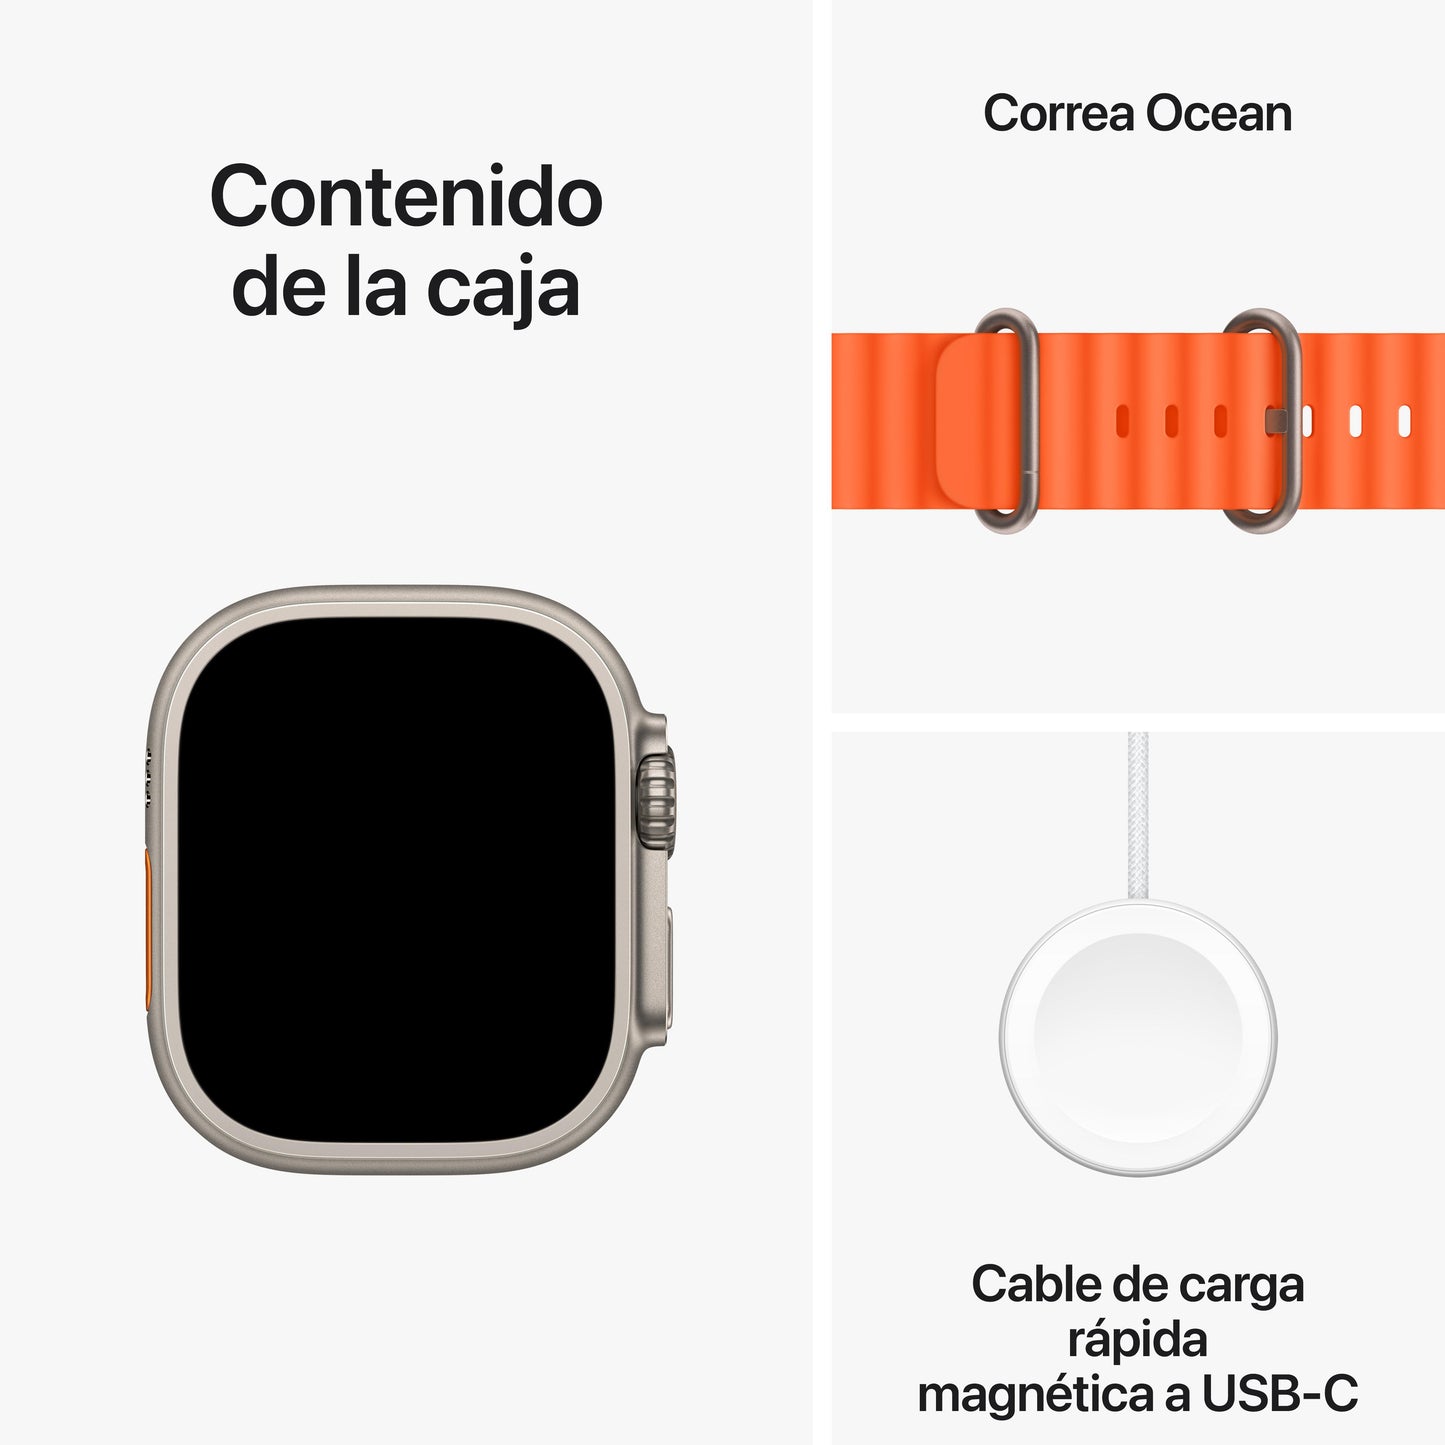 Apple Watch Ultra 2 (GPS + Cellular) - Caja de titanio de 49 mm - Correa Ocean naranja